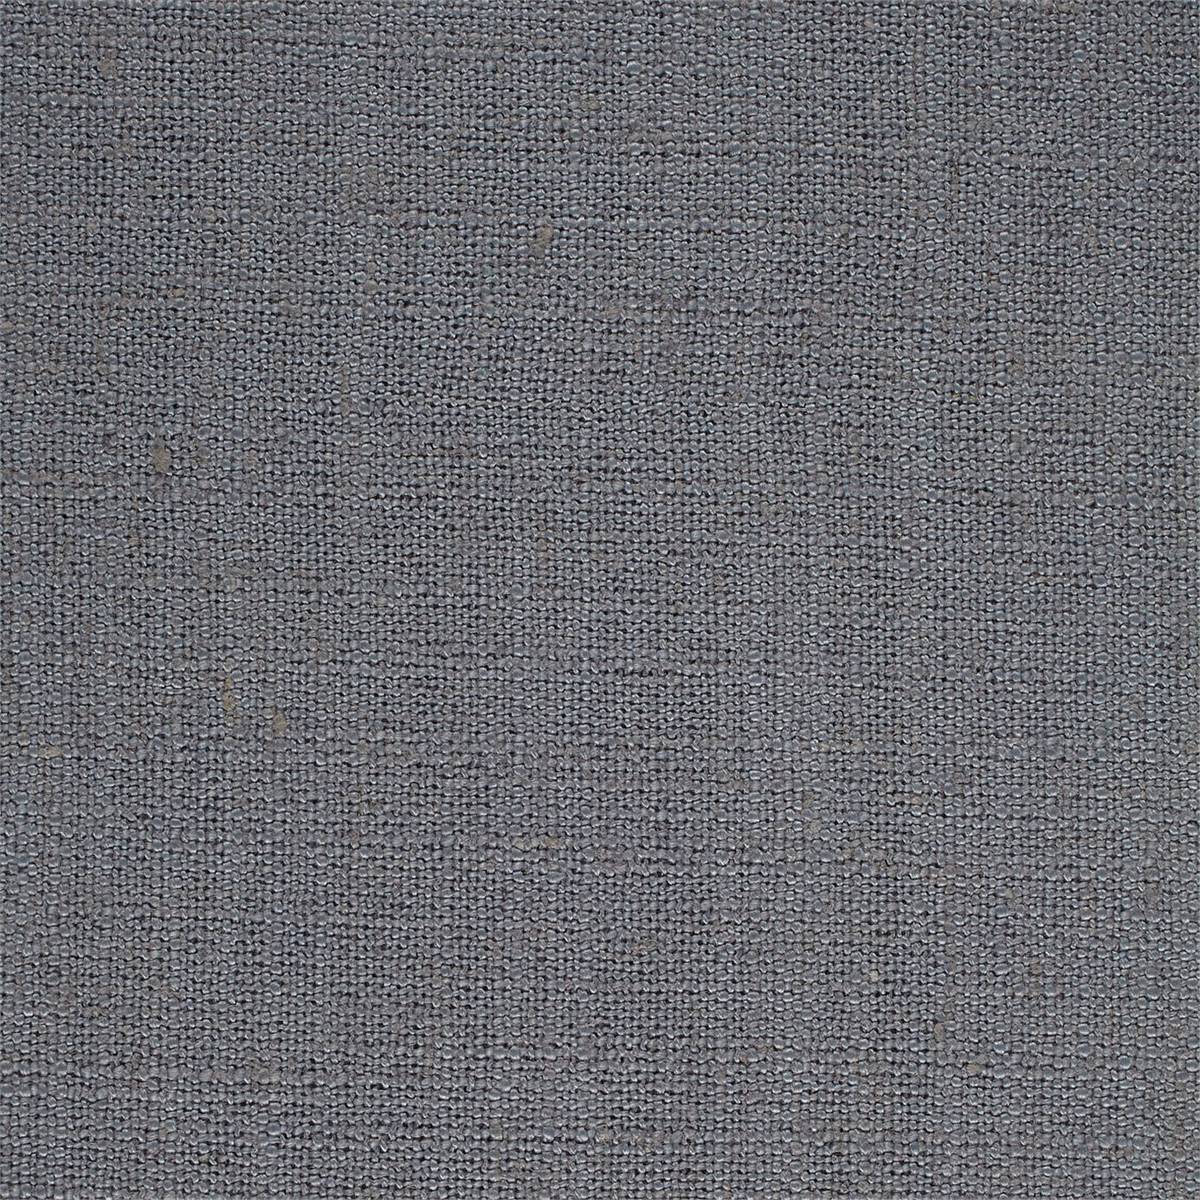 Lagom Ash Fabric by Sanderson